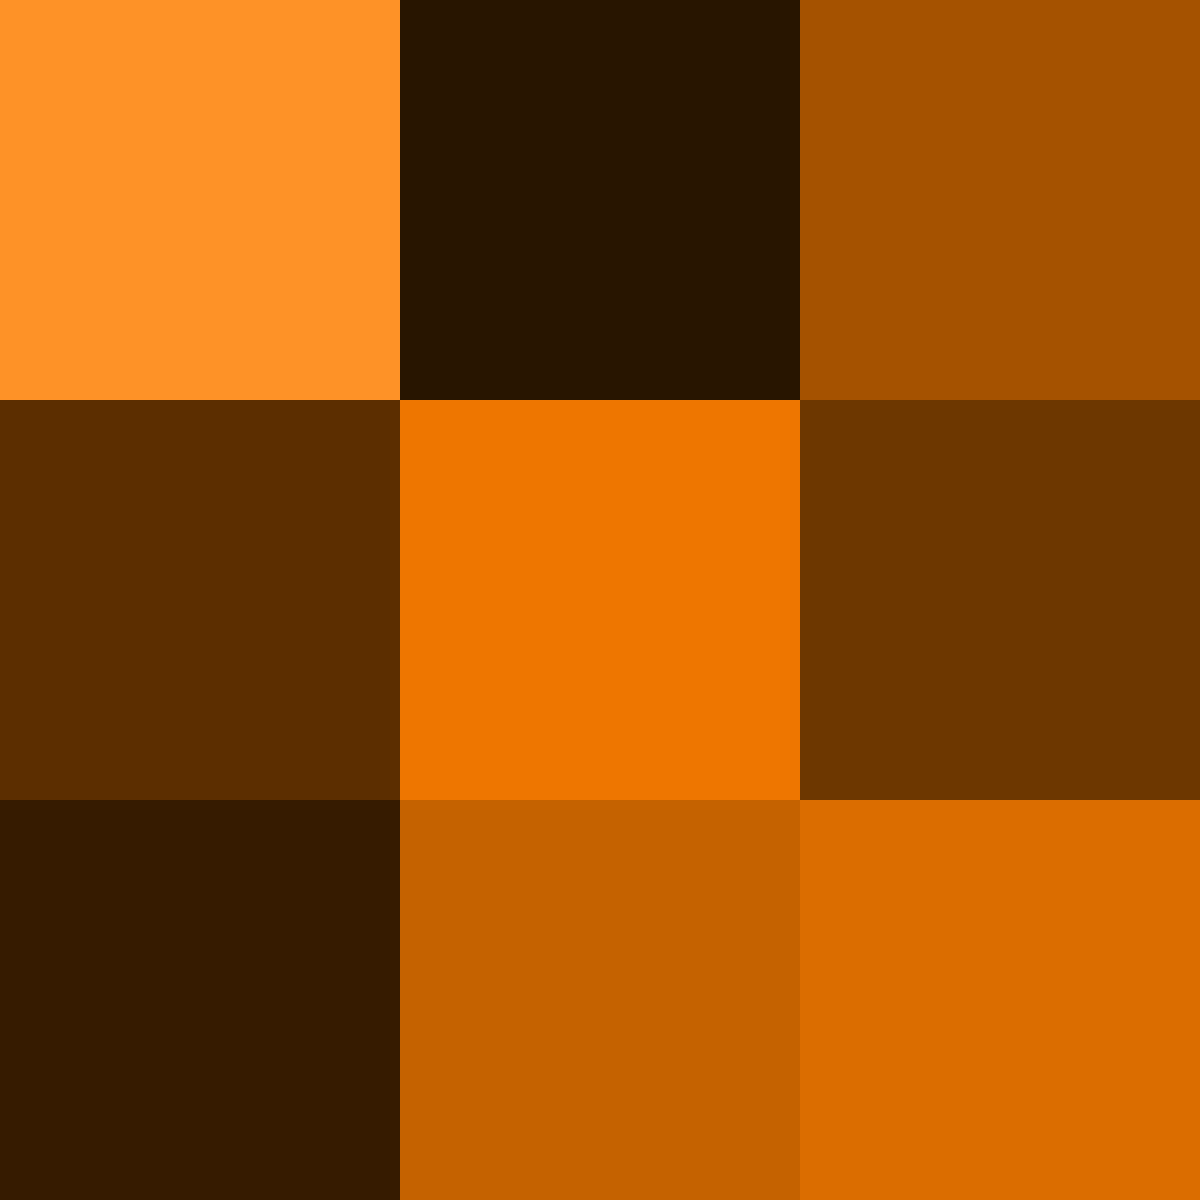 Explication de la couleur orange